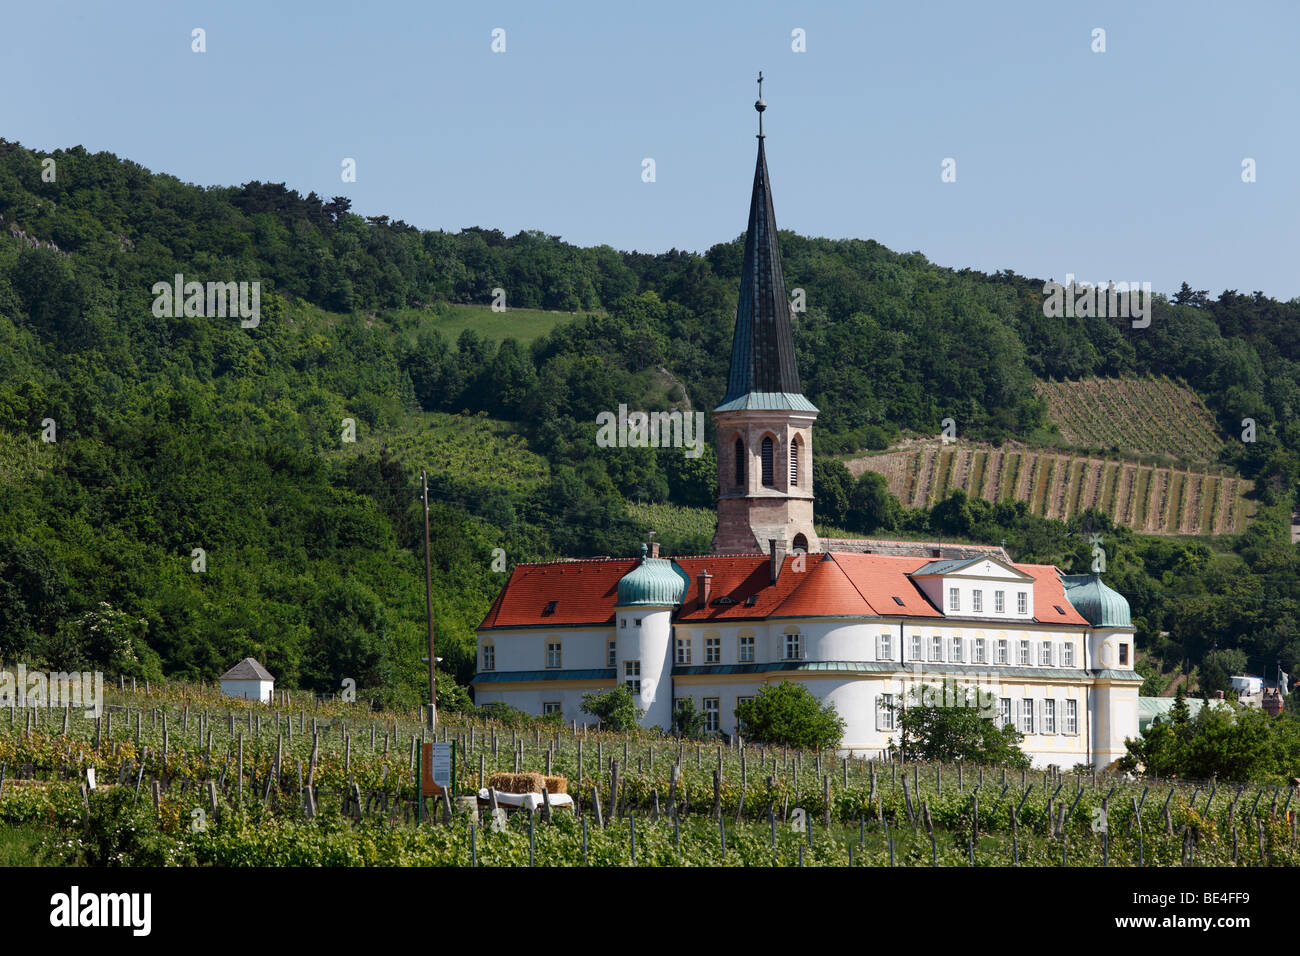 Burg des Deutschen Ordens, Gumpoldskirchen, Niederösterreich, Wien, Austria, Europe Stockfoto